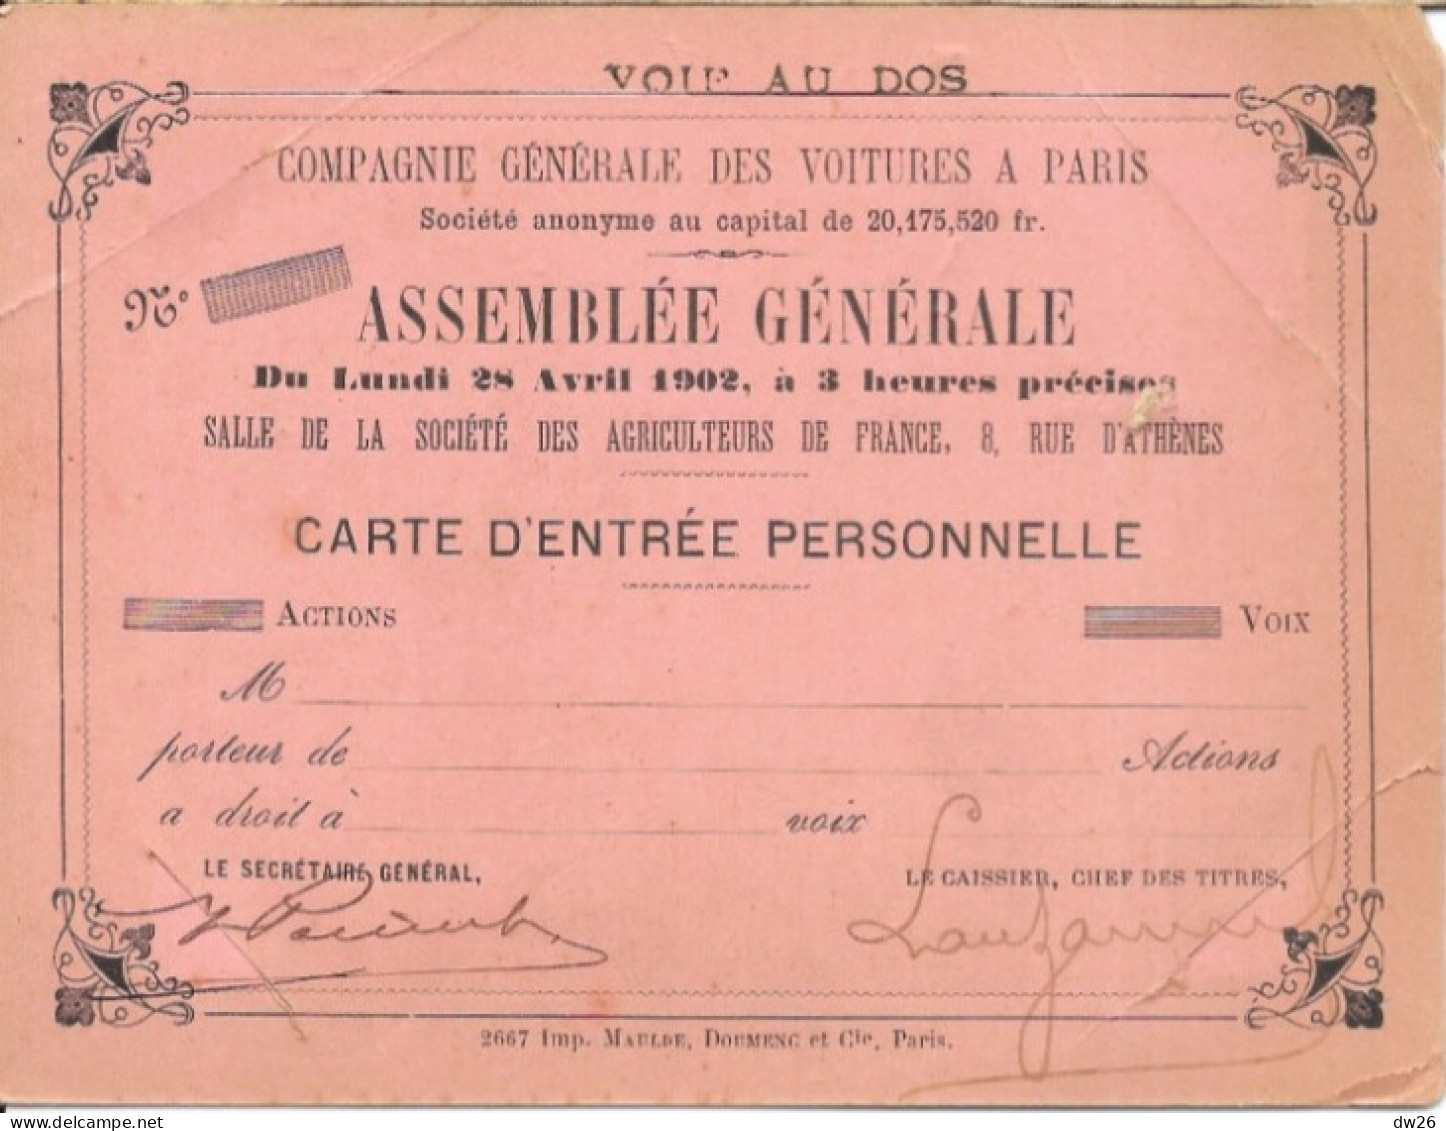 Compagnie Générale Des Voitures à Paris - Carte D'Entrée Pour L'Assemblée Générale 28 Avril 1902 - Voitures